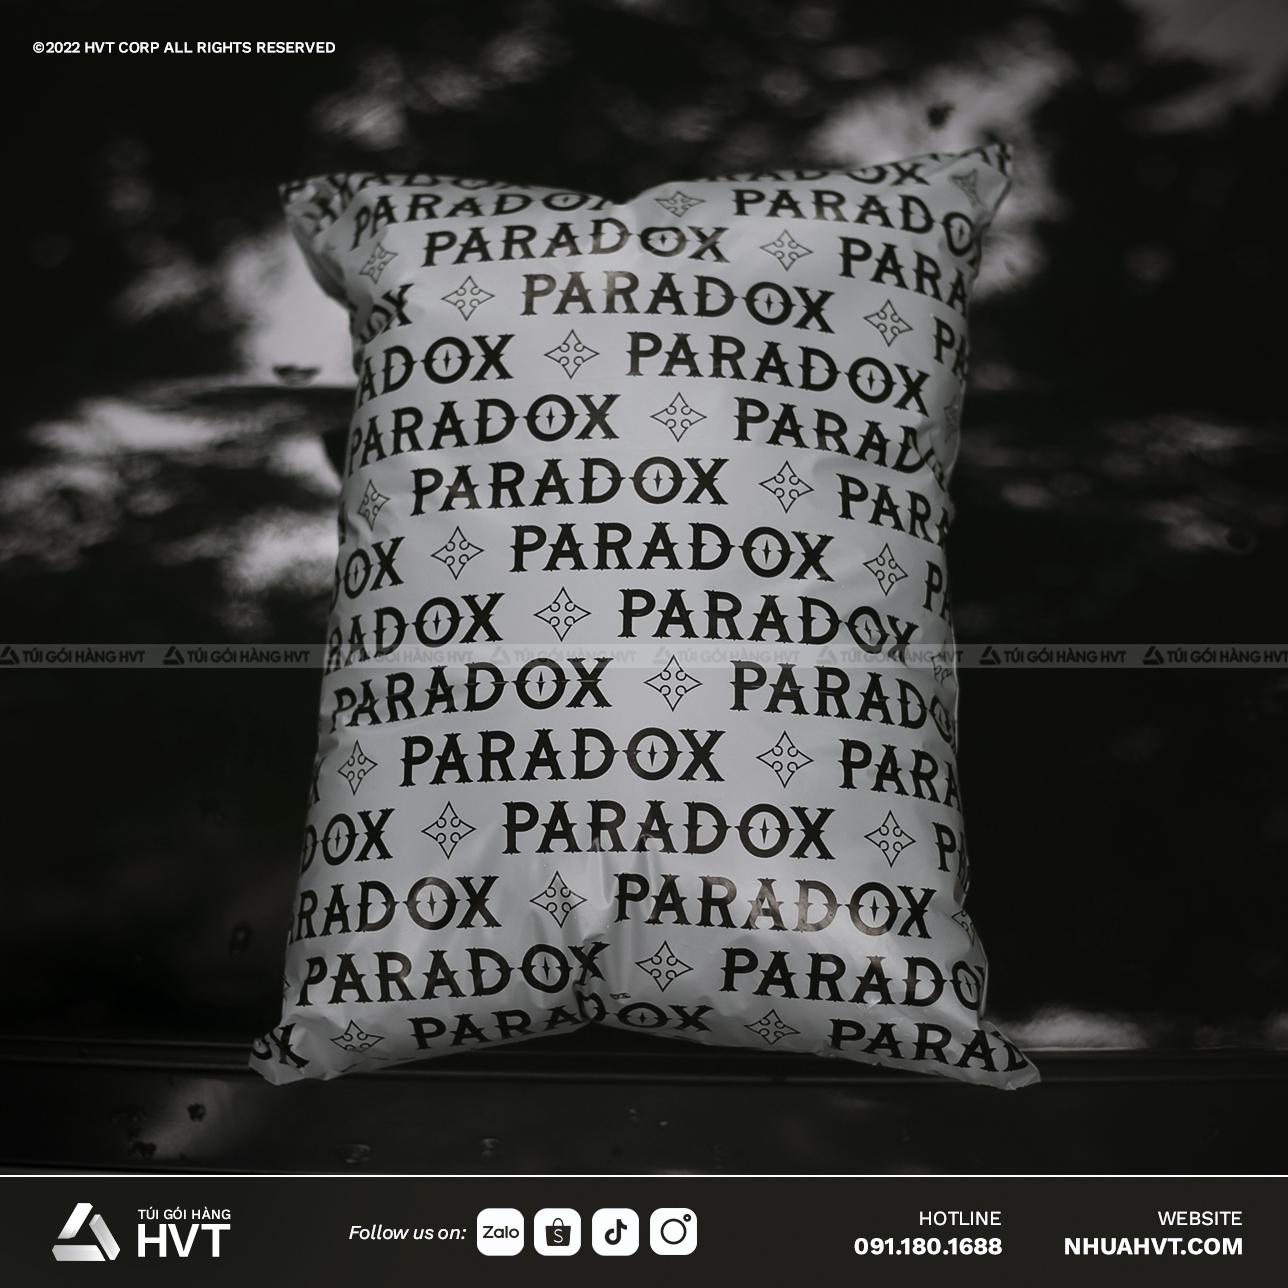  túi gói hàng in logo của Paradox